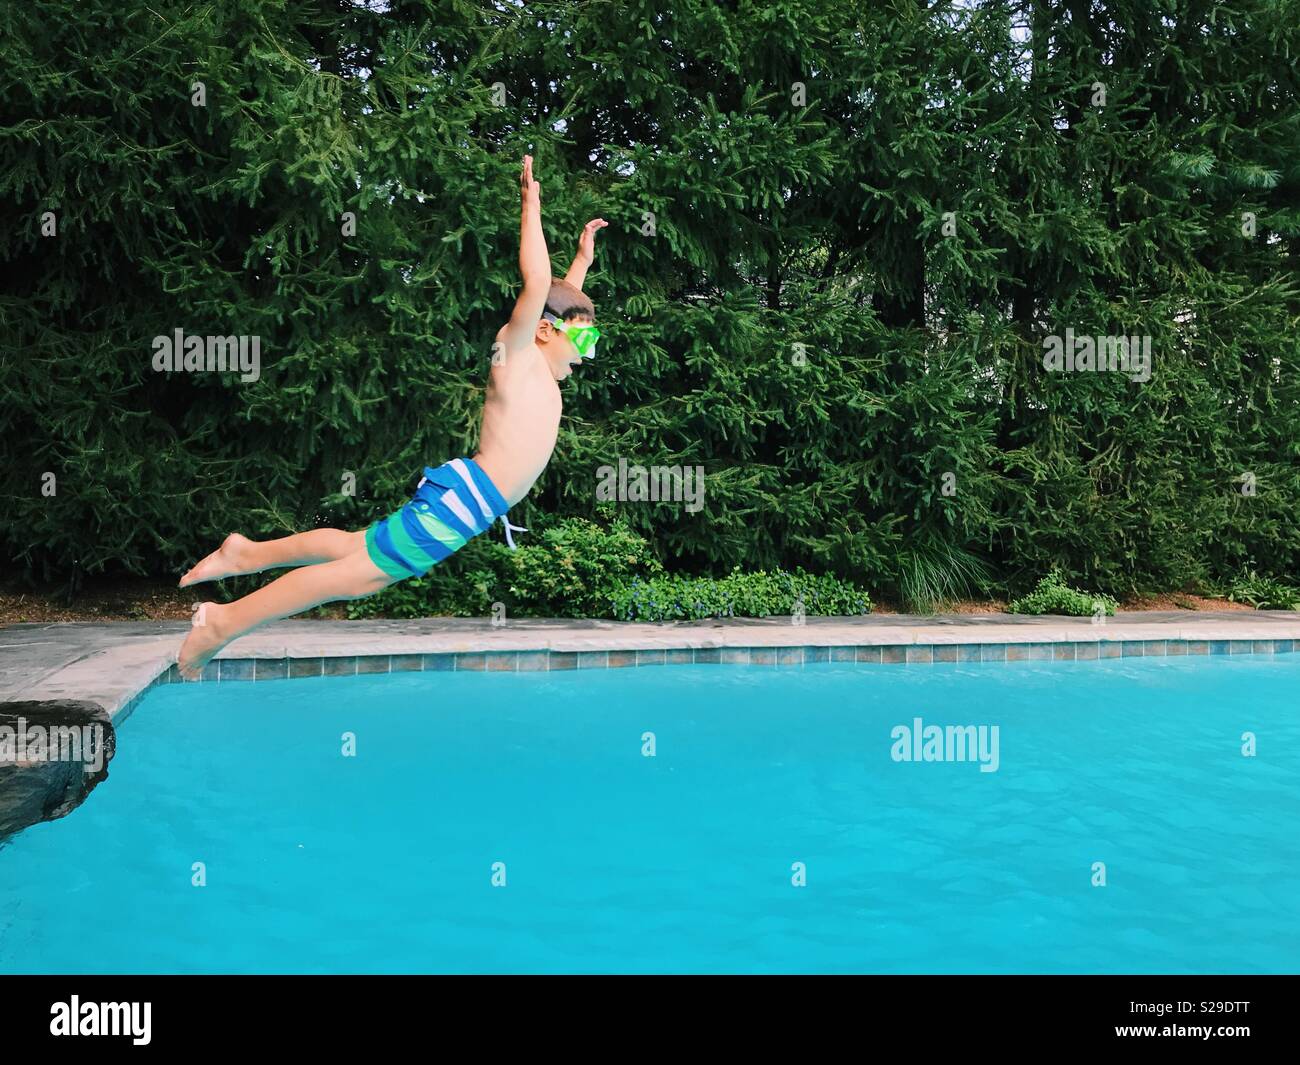 Un jeune garçon sautant dans une piscine extérieure en été. Banque D'Images